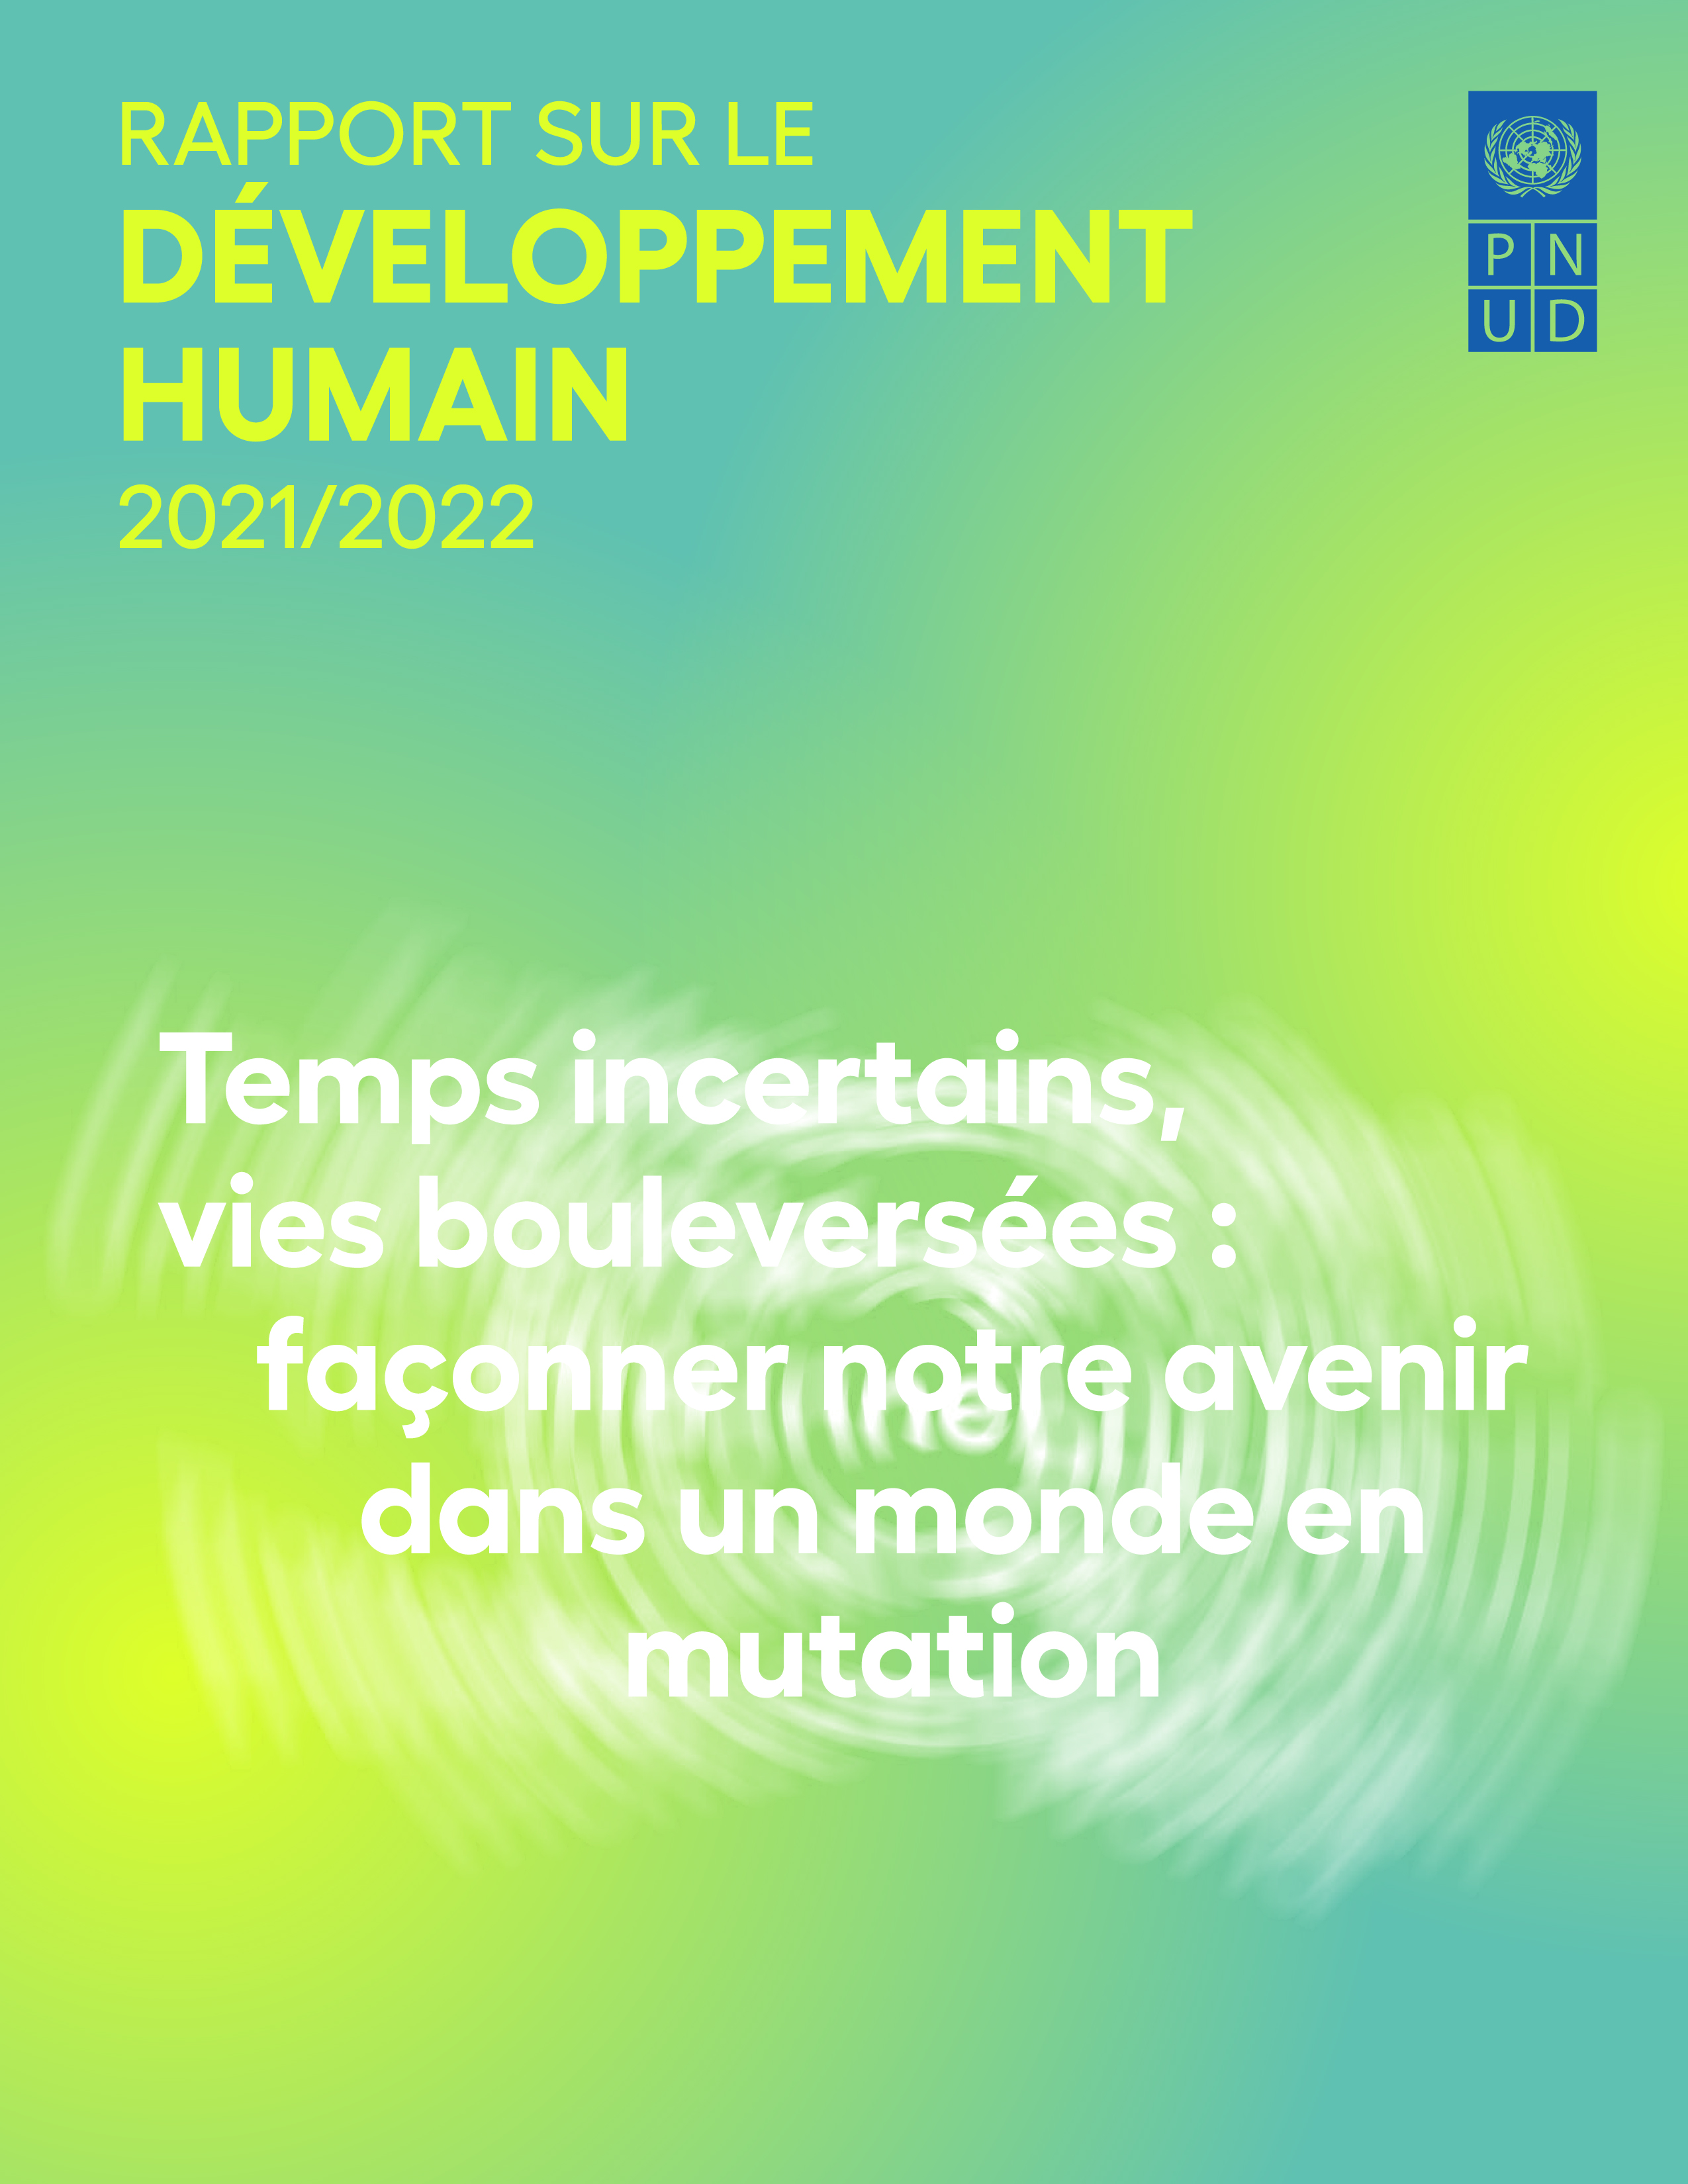 image of Rapport sur le développement humain 2021/2022